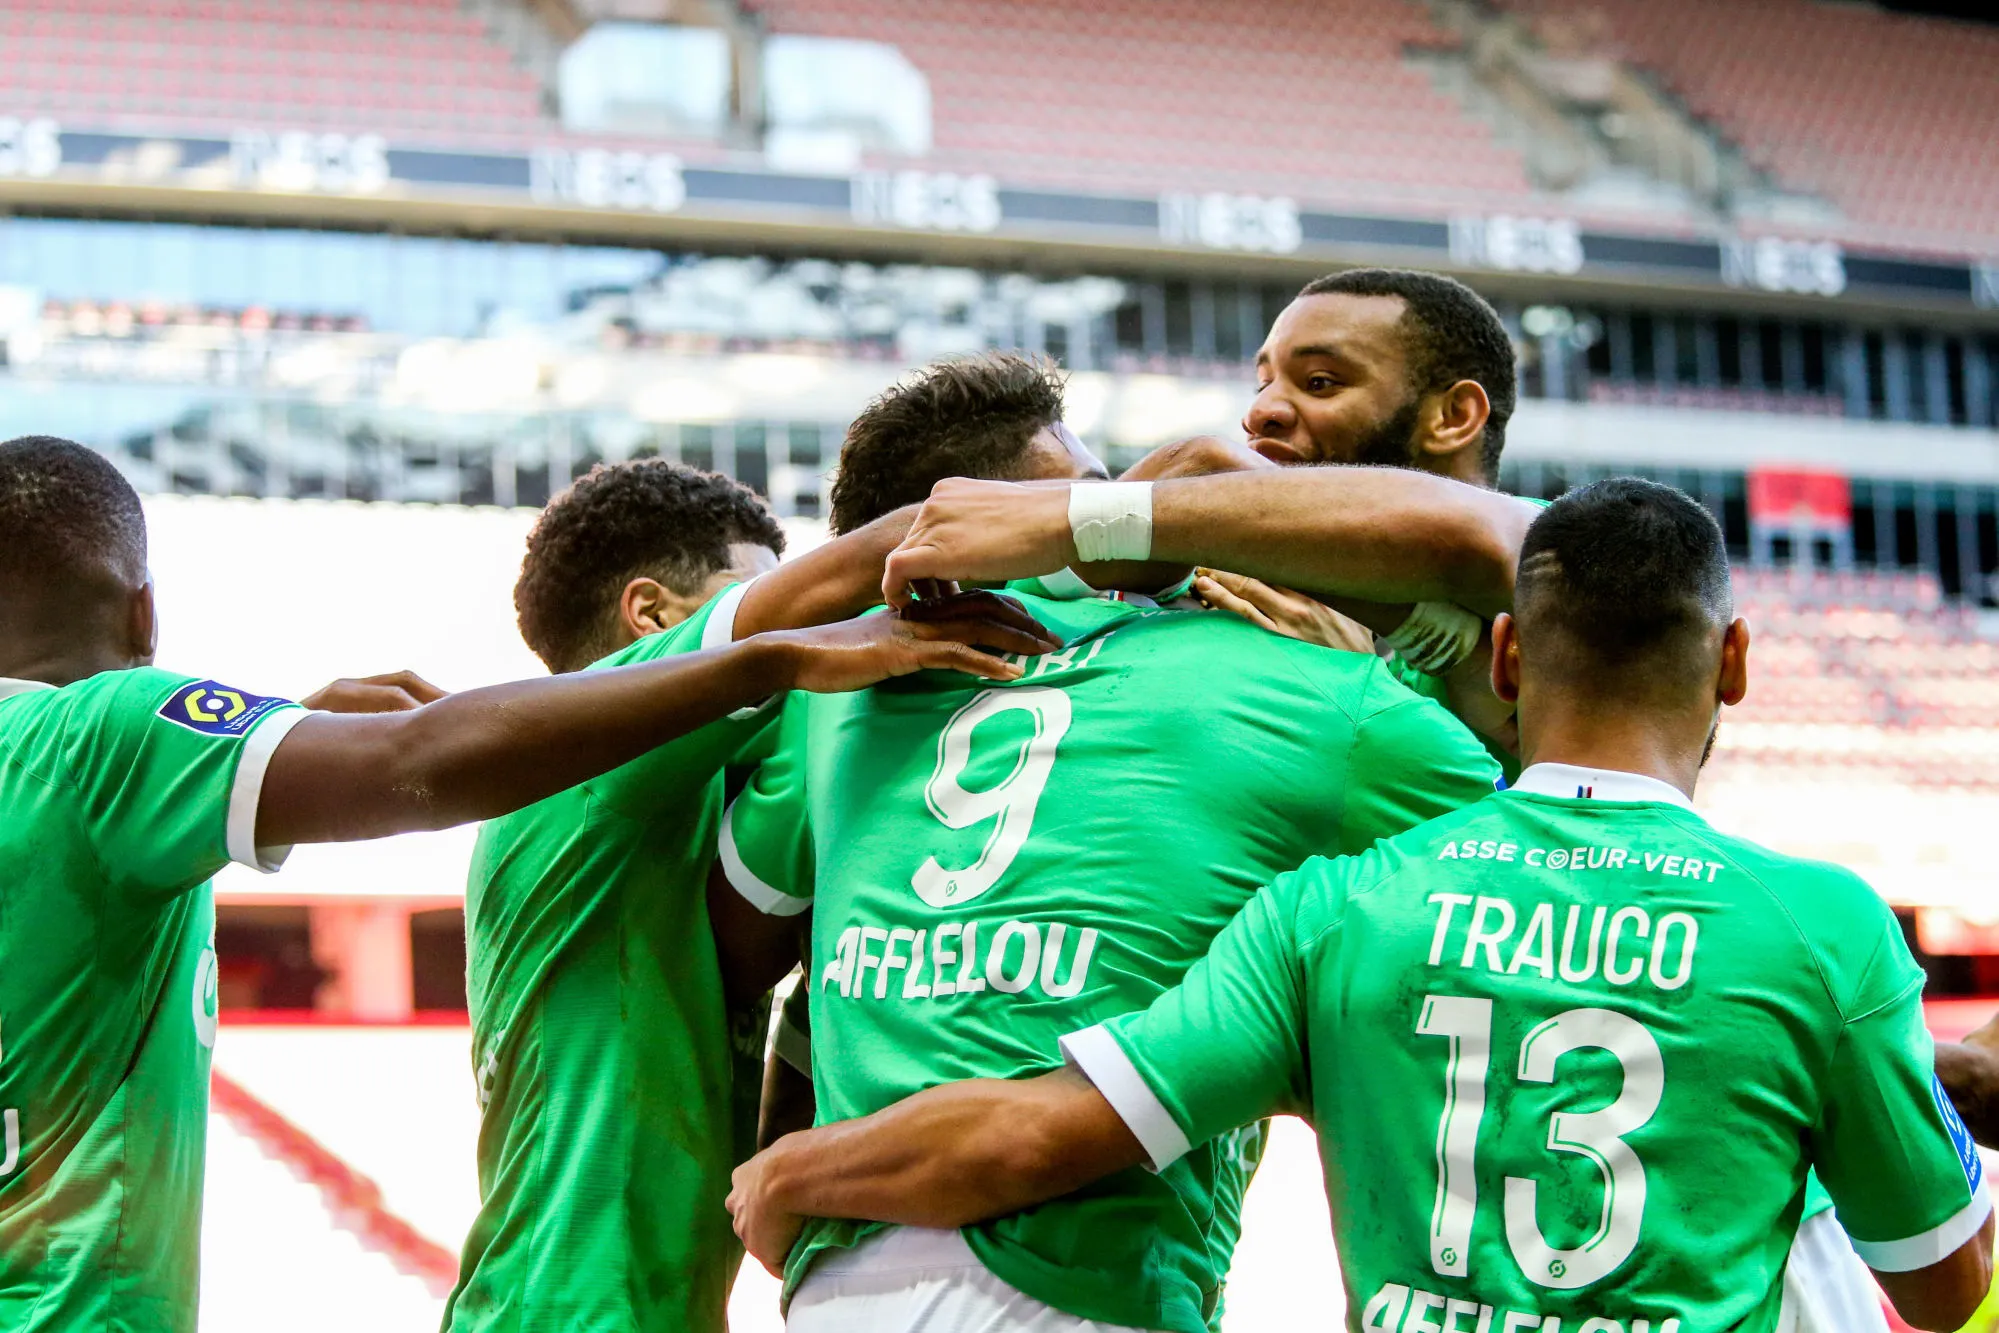 Pronostic Saint-Etienne Dijon : Analyse, cotes et prono du match de Ligue 1